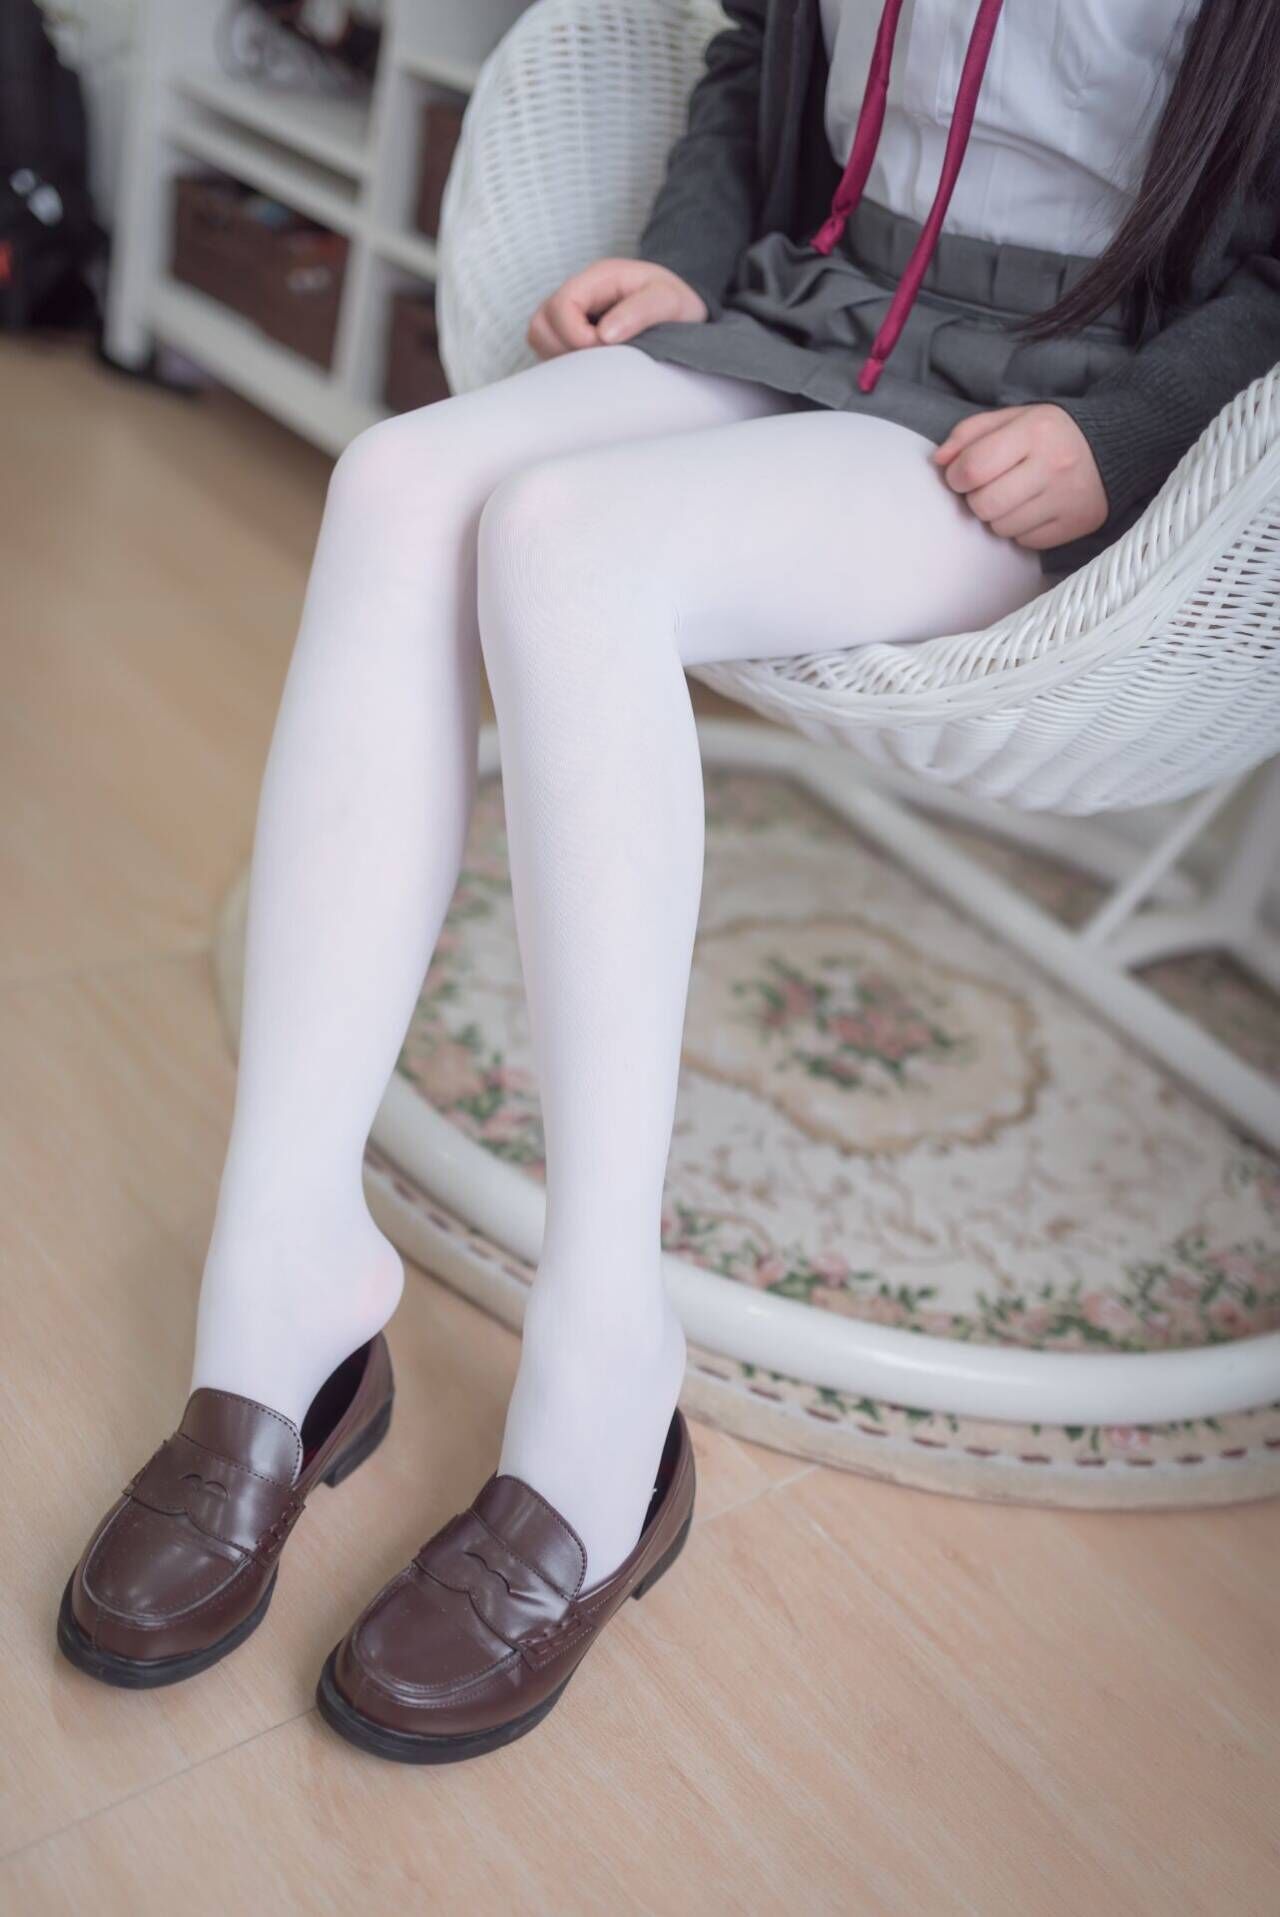 少女穿上白色丝袜很纯情